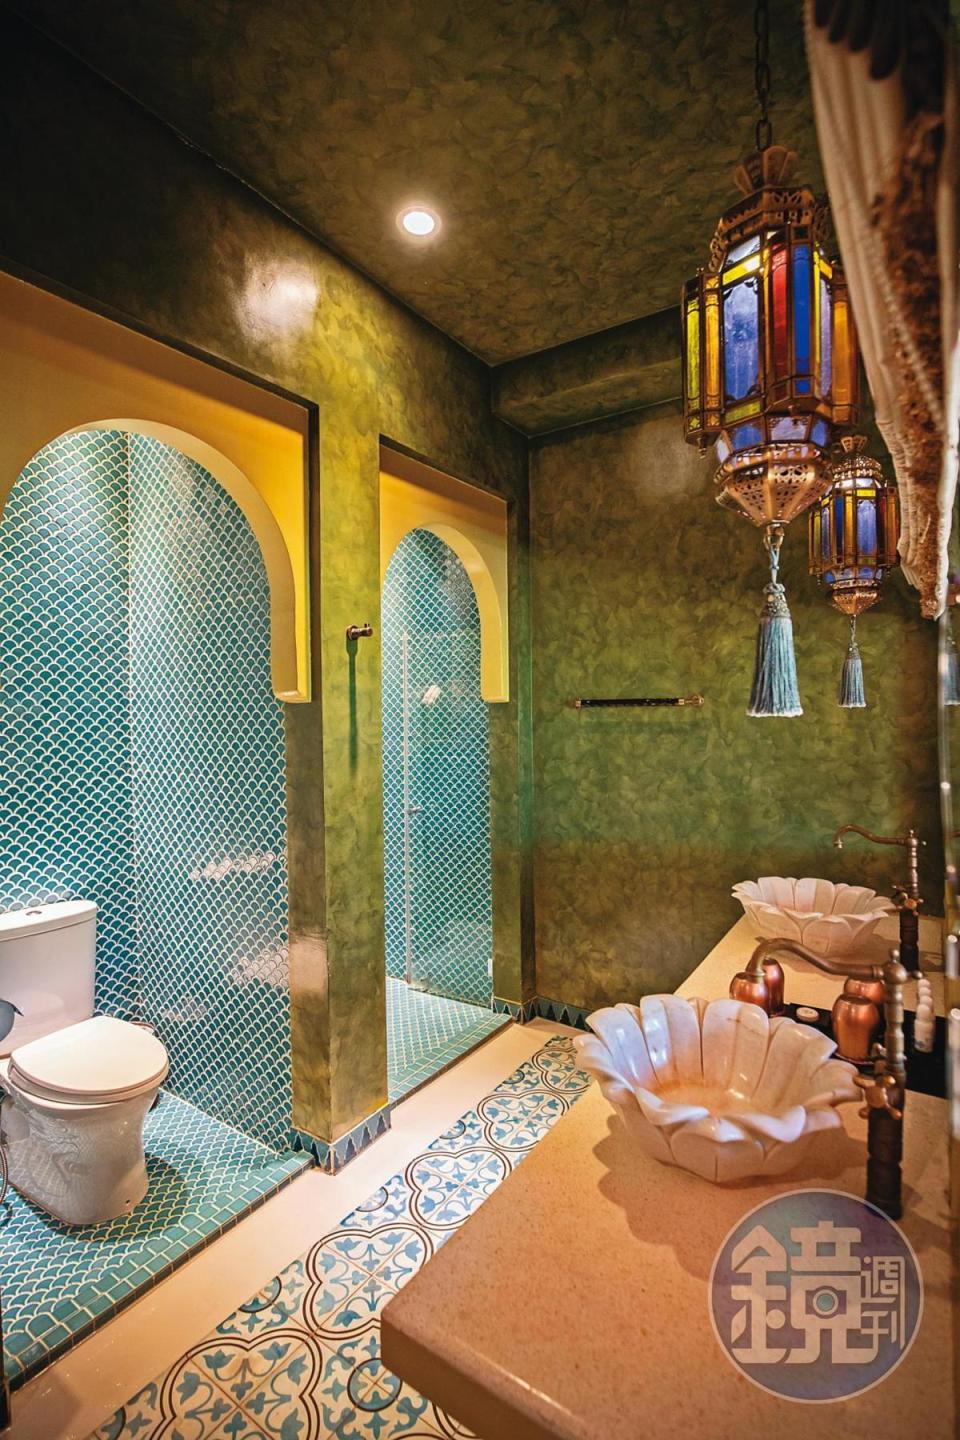 就連浴池的地磚與牆壁磁磚拼貼，都展現濃厚的摩洛哥色彩。